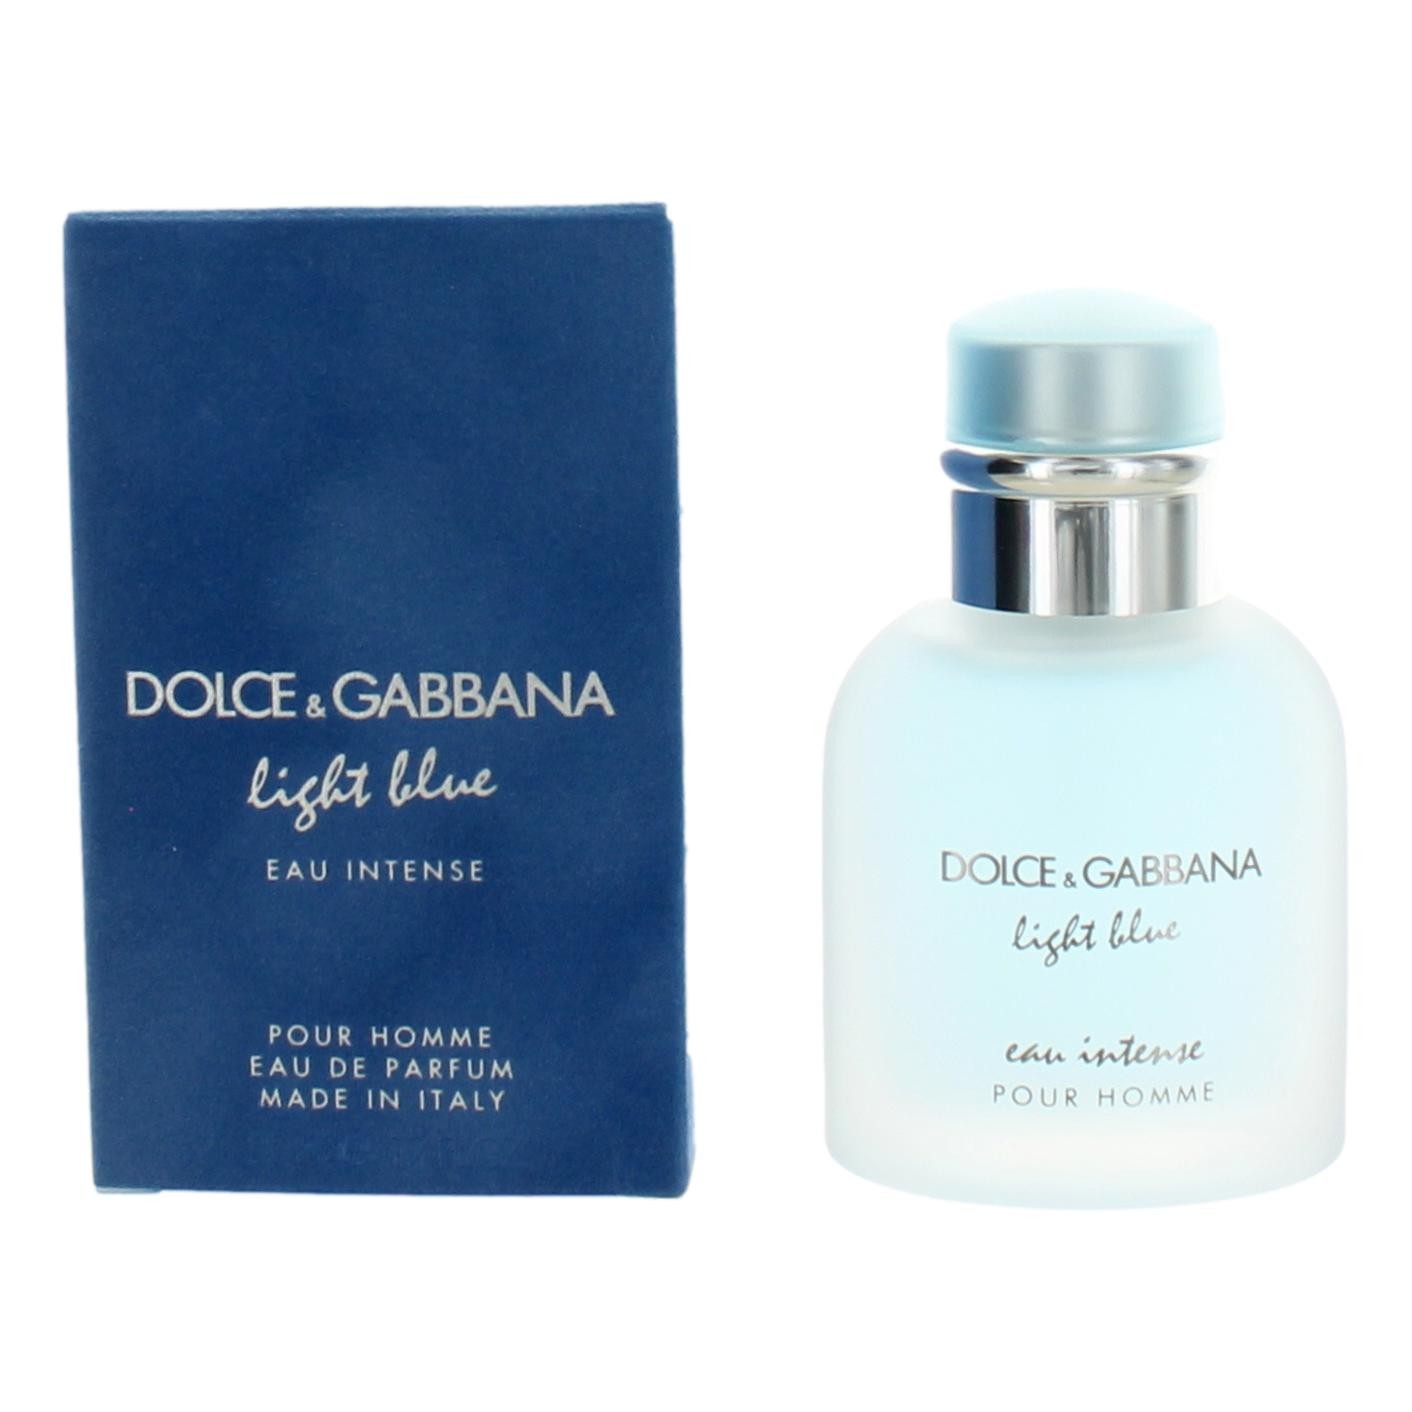 Light Blue Eau Intense by Dolce & Gabbana 1.6 oz Eau De Parfum Spray for Men